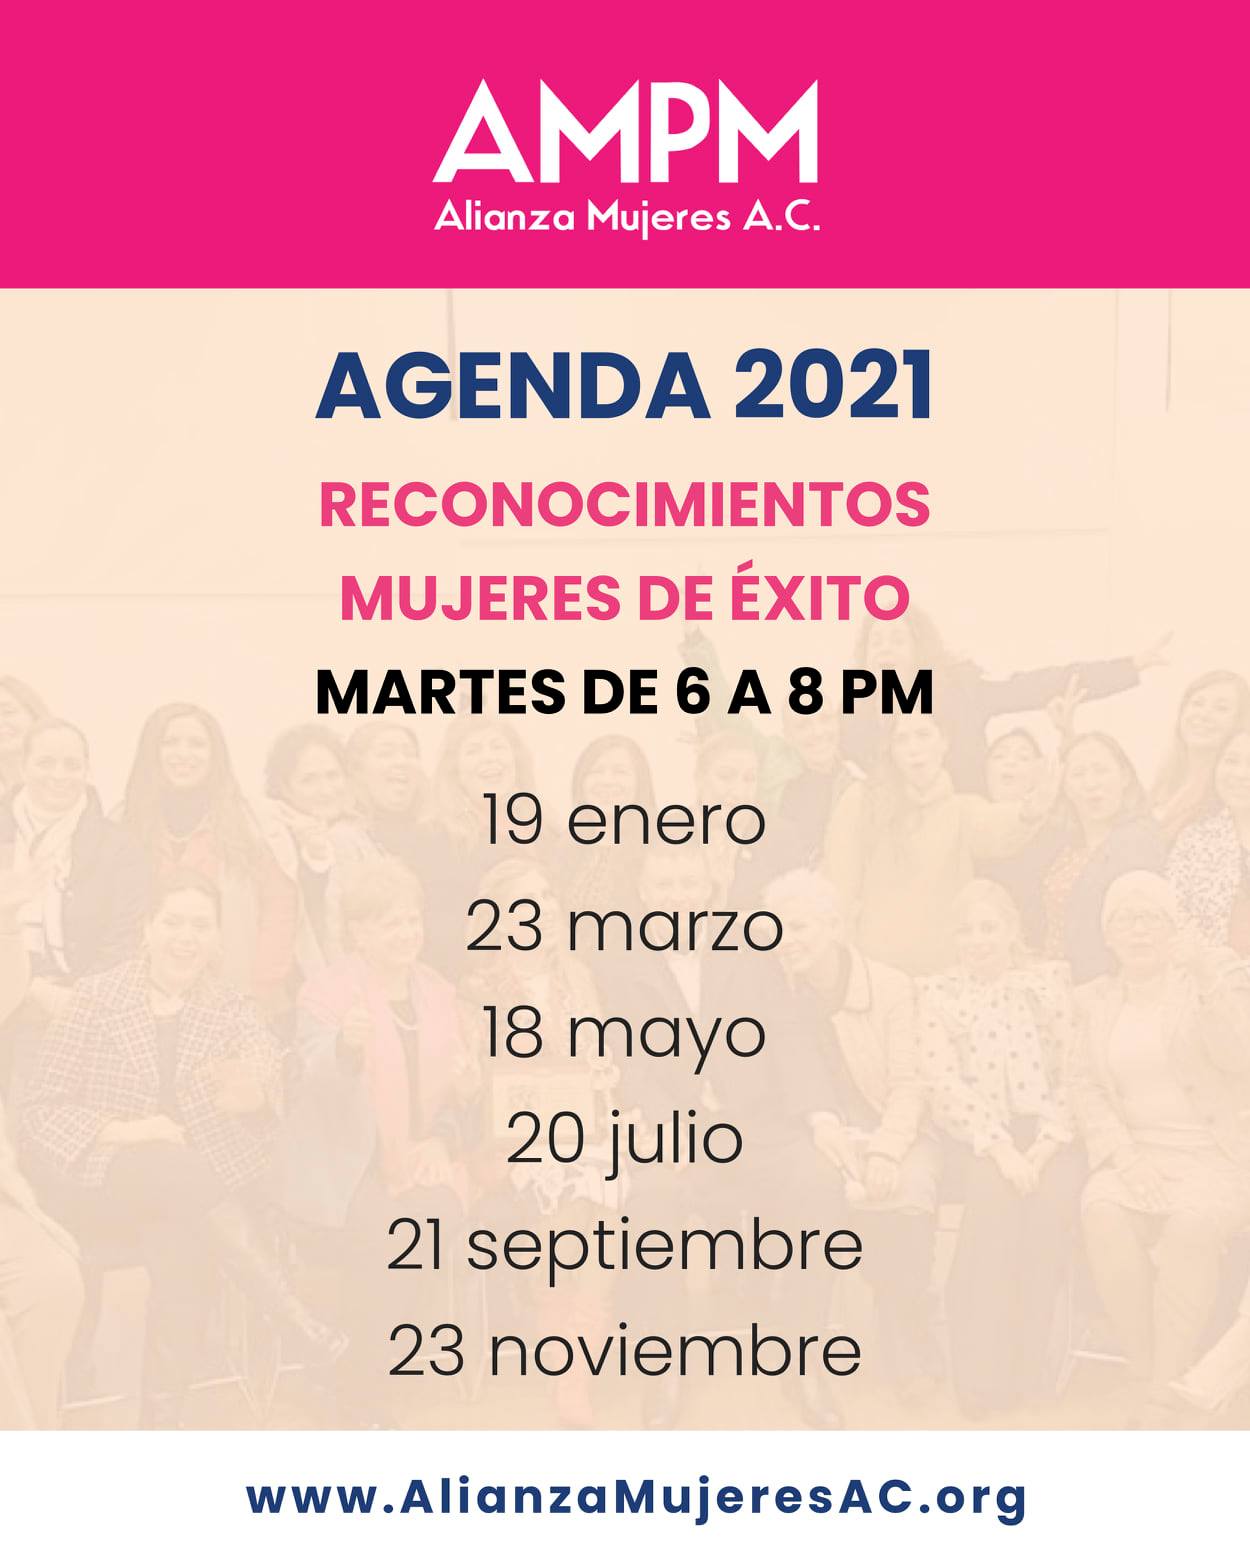 Agenda 2021